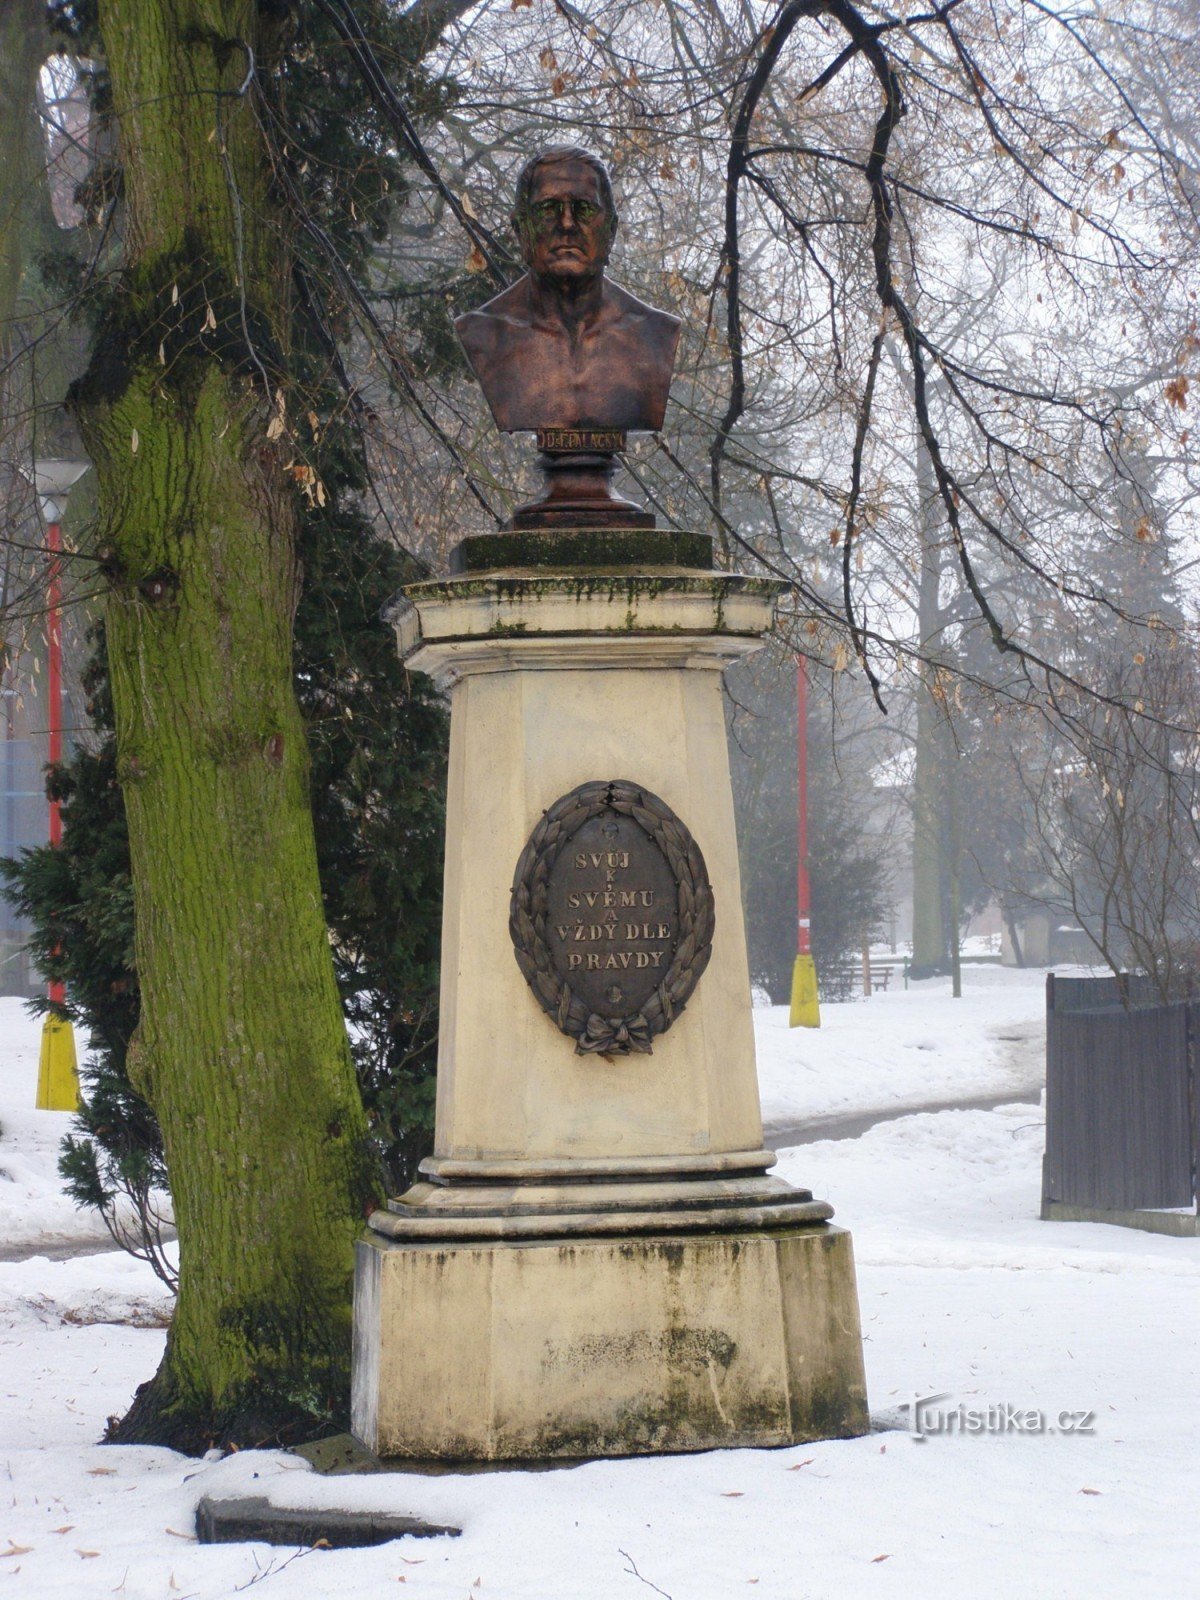 Nový Bydžov - monumento a František Palacký